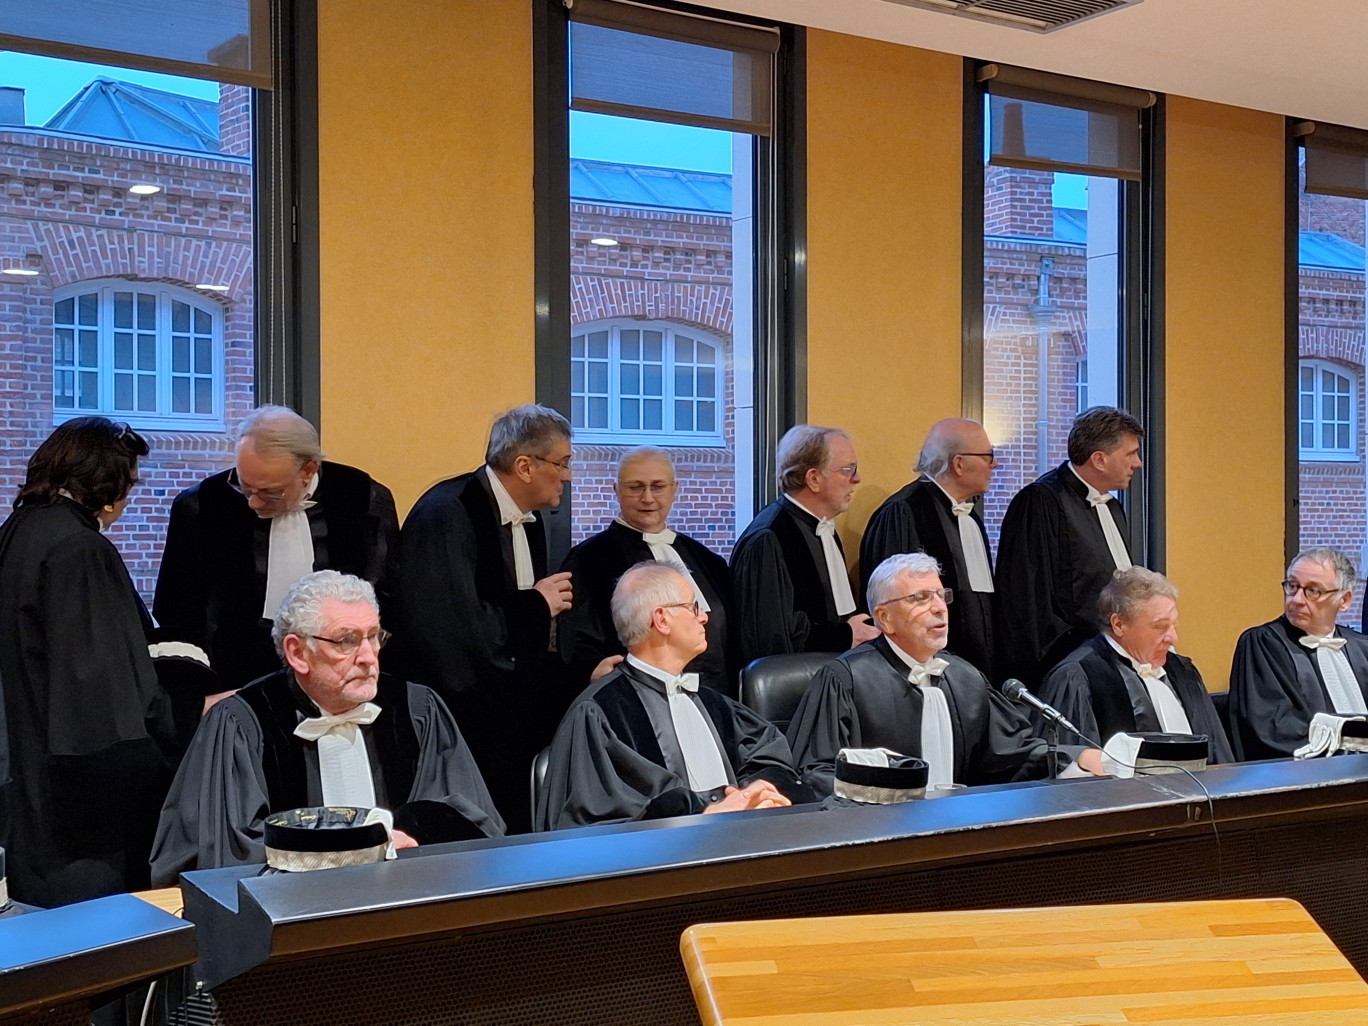 Le tribunal de commerce de Douai-Cambrai, présidé par Jean-François Krummenacker, a tenu son audience solennelle de rentrée mercredi 10 janvier.